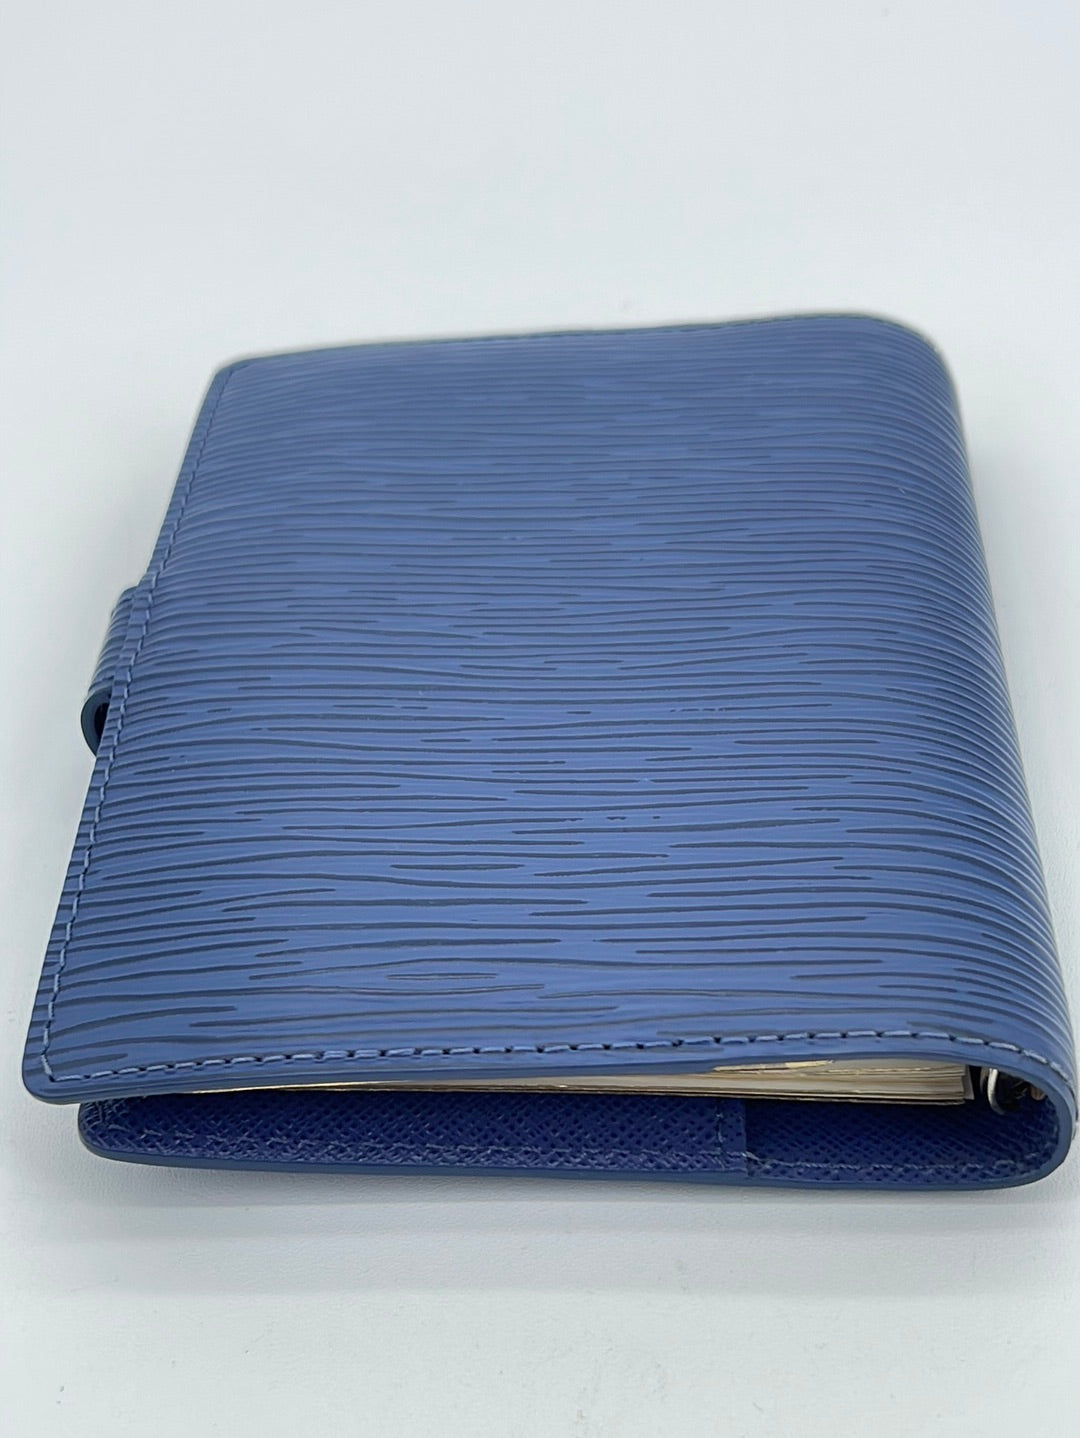 Louis Vuitton, Bags, Louis Vuitton Blue Epi Leather Pm Agenda Cover  Passport Holder